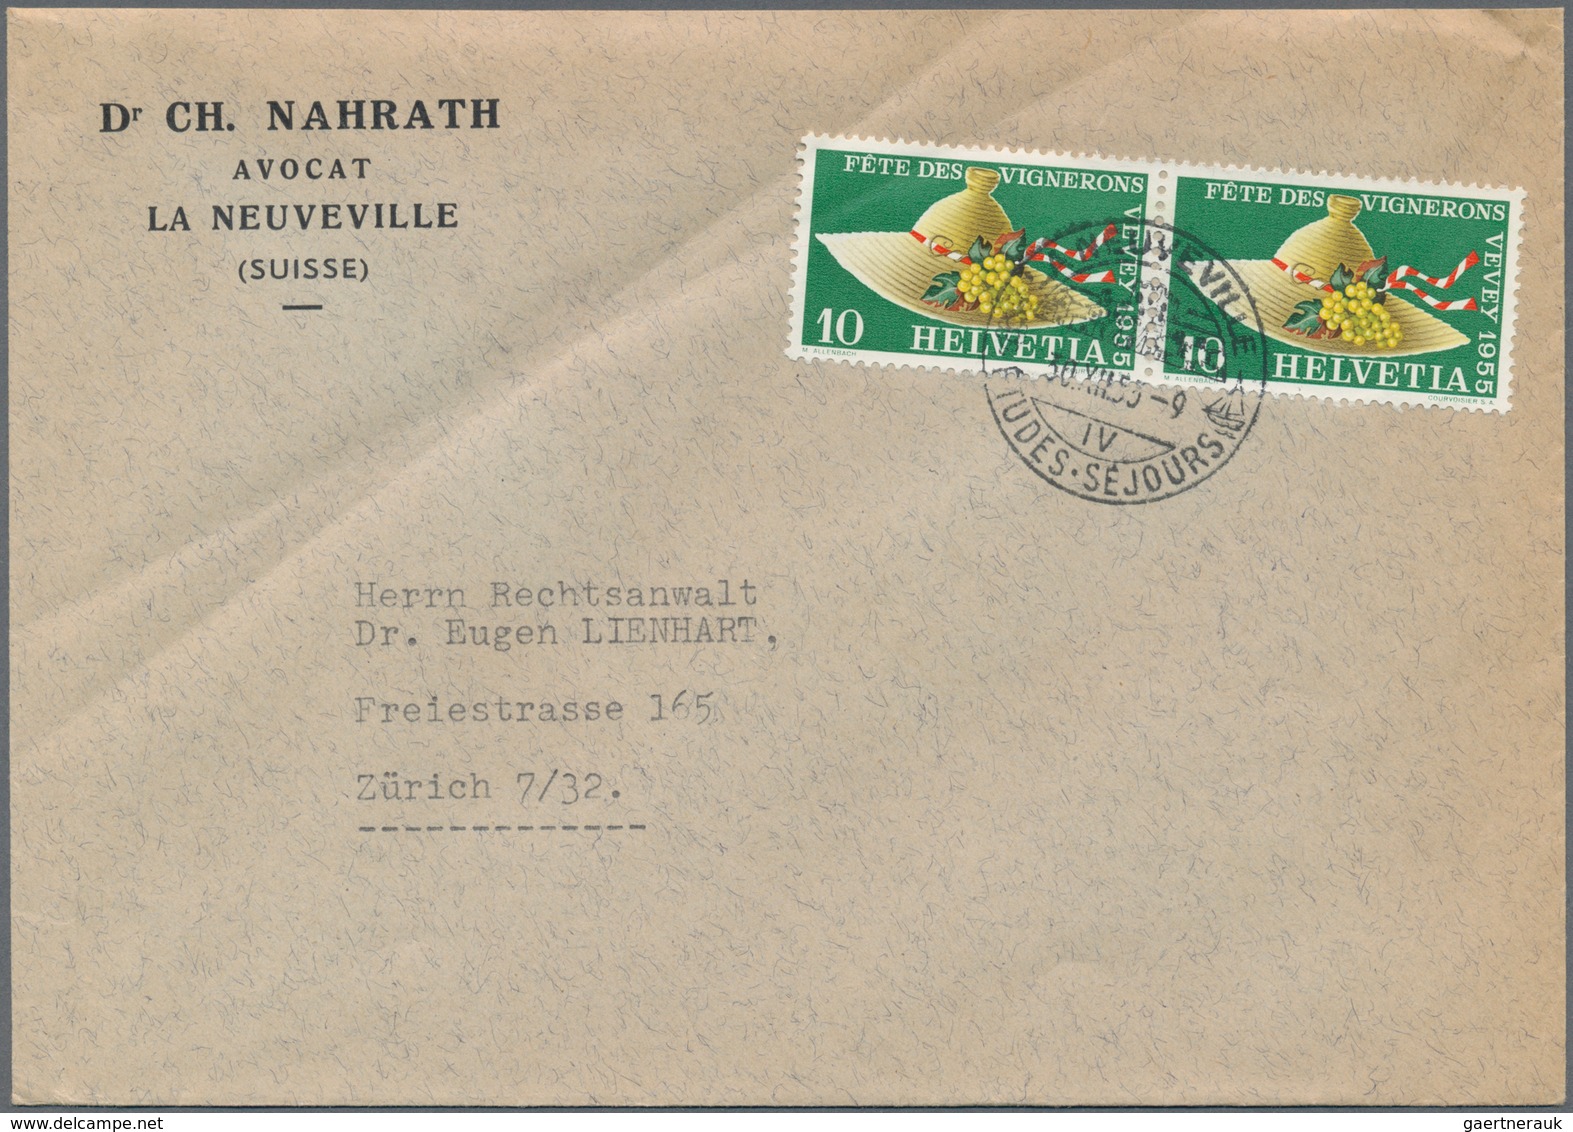 28101 Schweiz: 1940/2000 (ca.), vielseitiger Bestand von geschätzt über 800 (meist Bedarfs-)Briefen und Ka